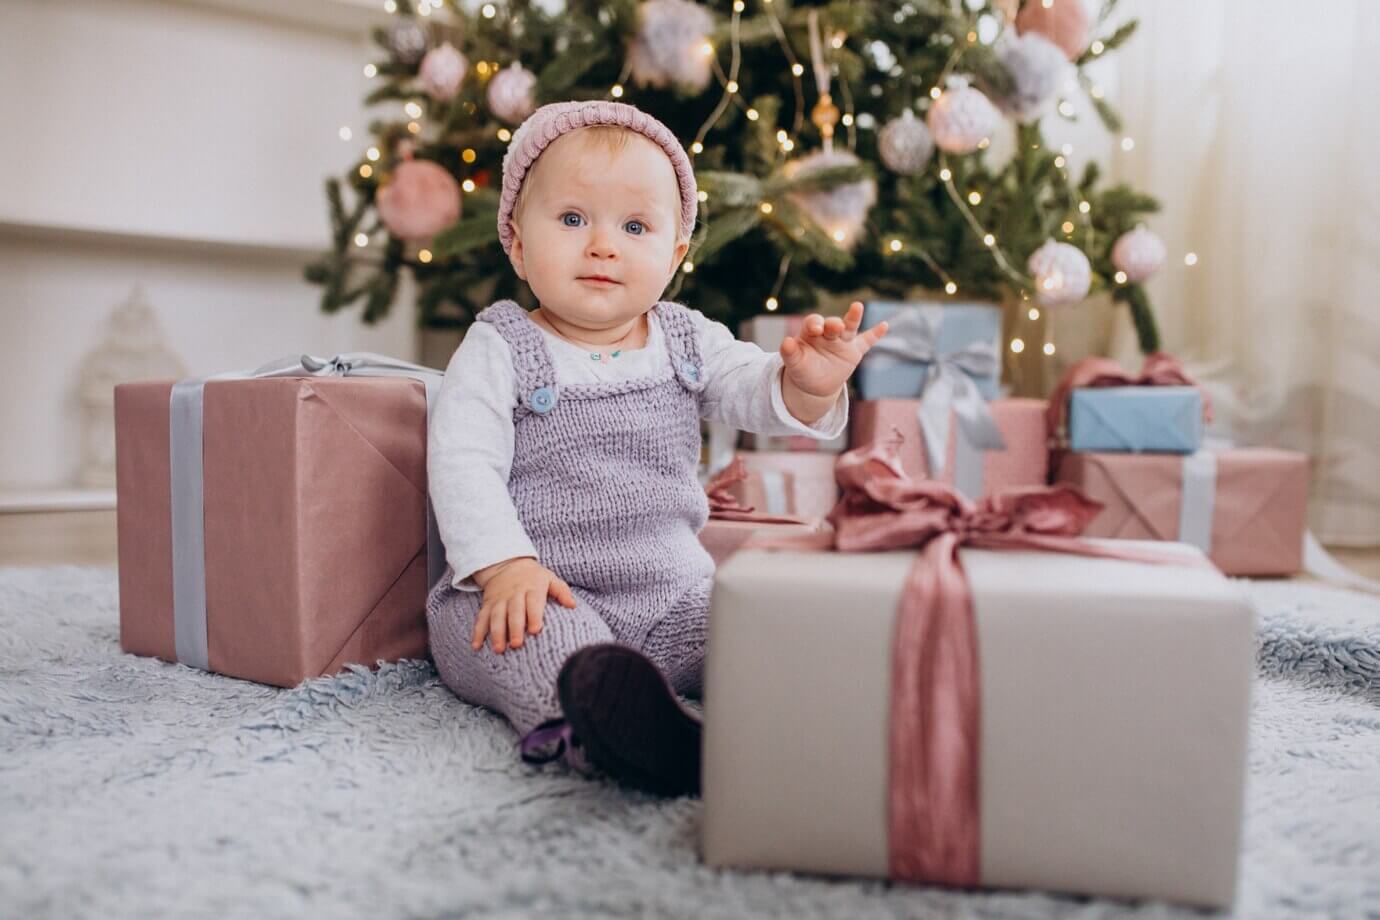 Optez pour votre enfant de 4 mois un cadeau unique